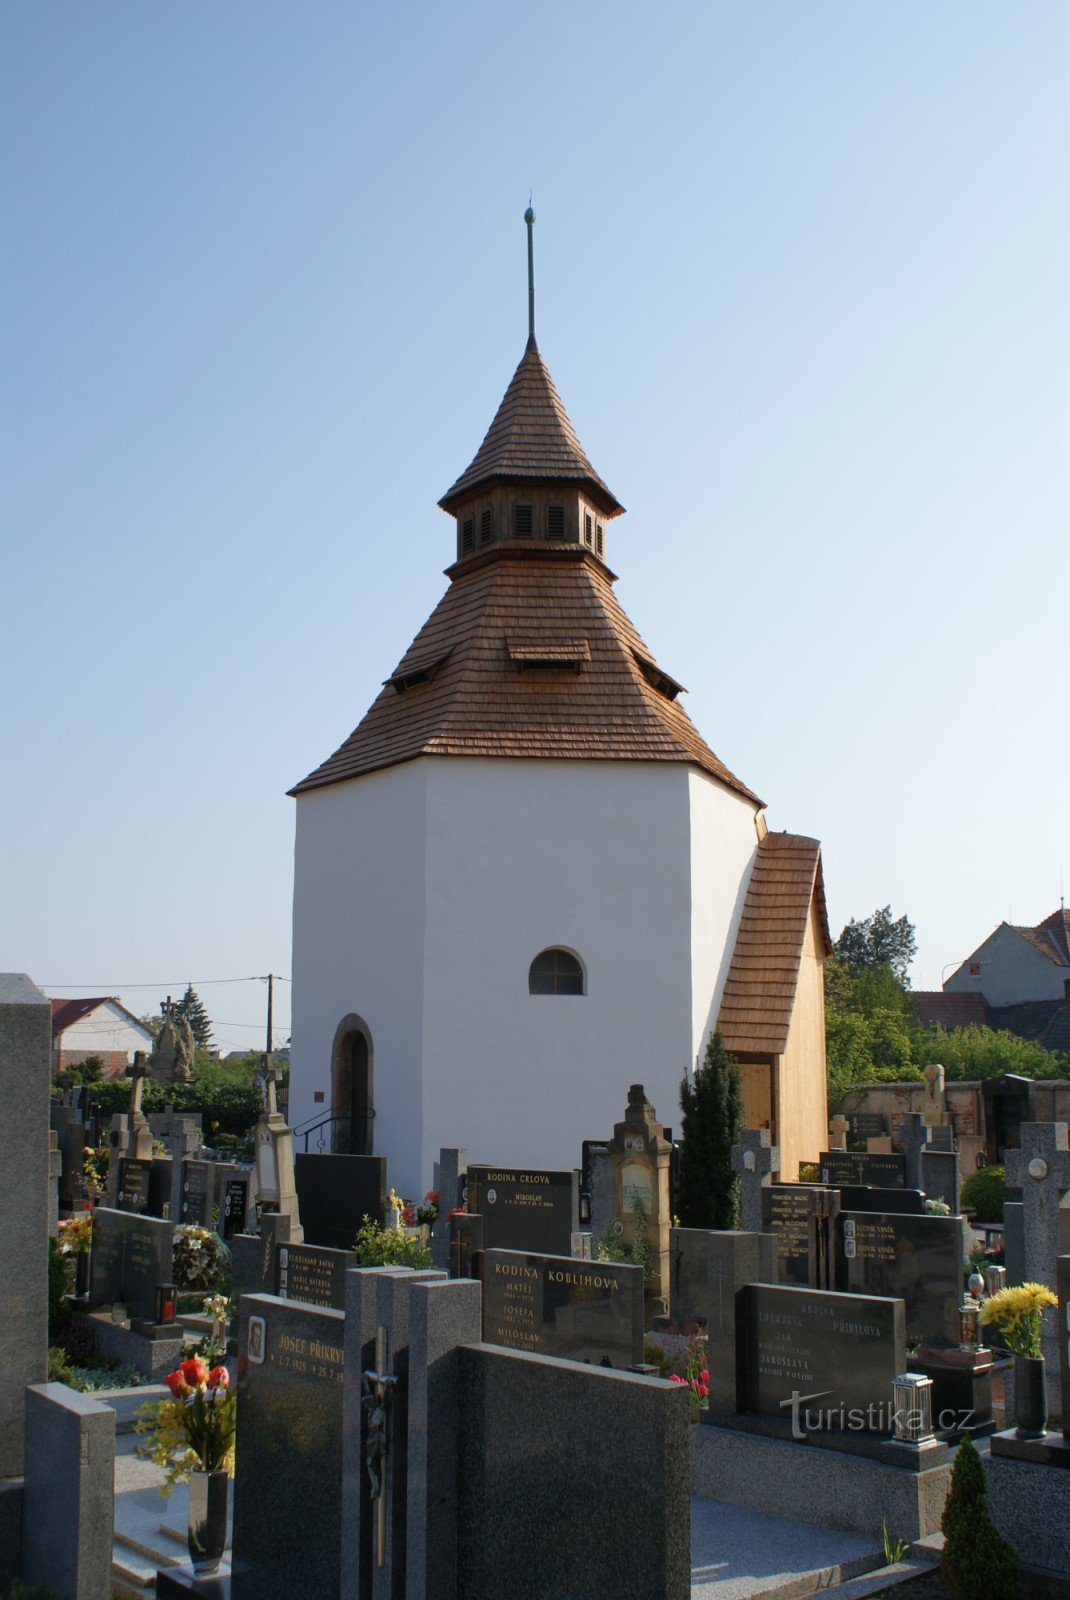 Staré Město cerca de Uh. Hradiště – área del cementerio con la iglesia de St. Archangel Michael